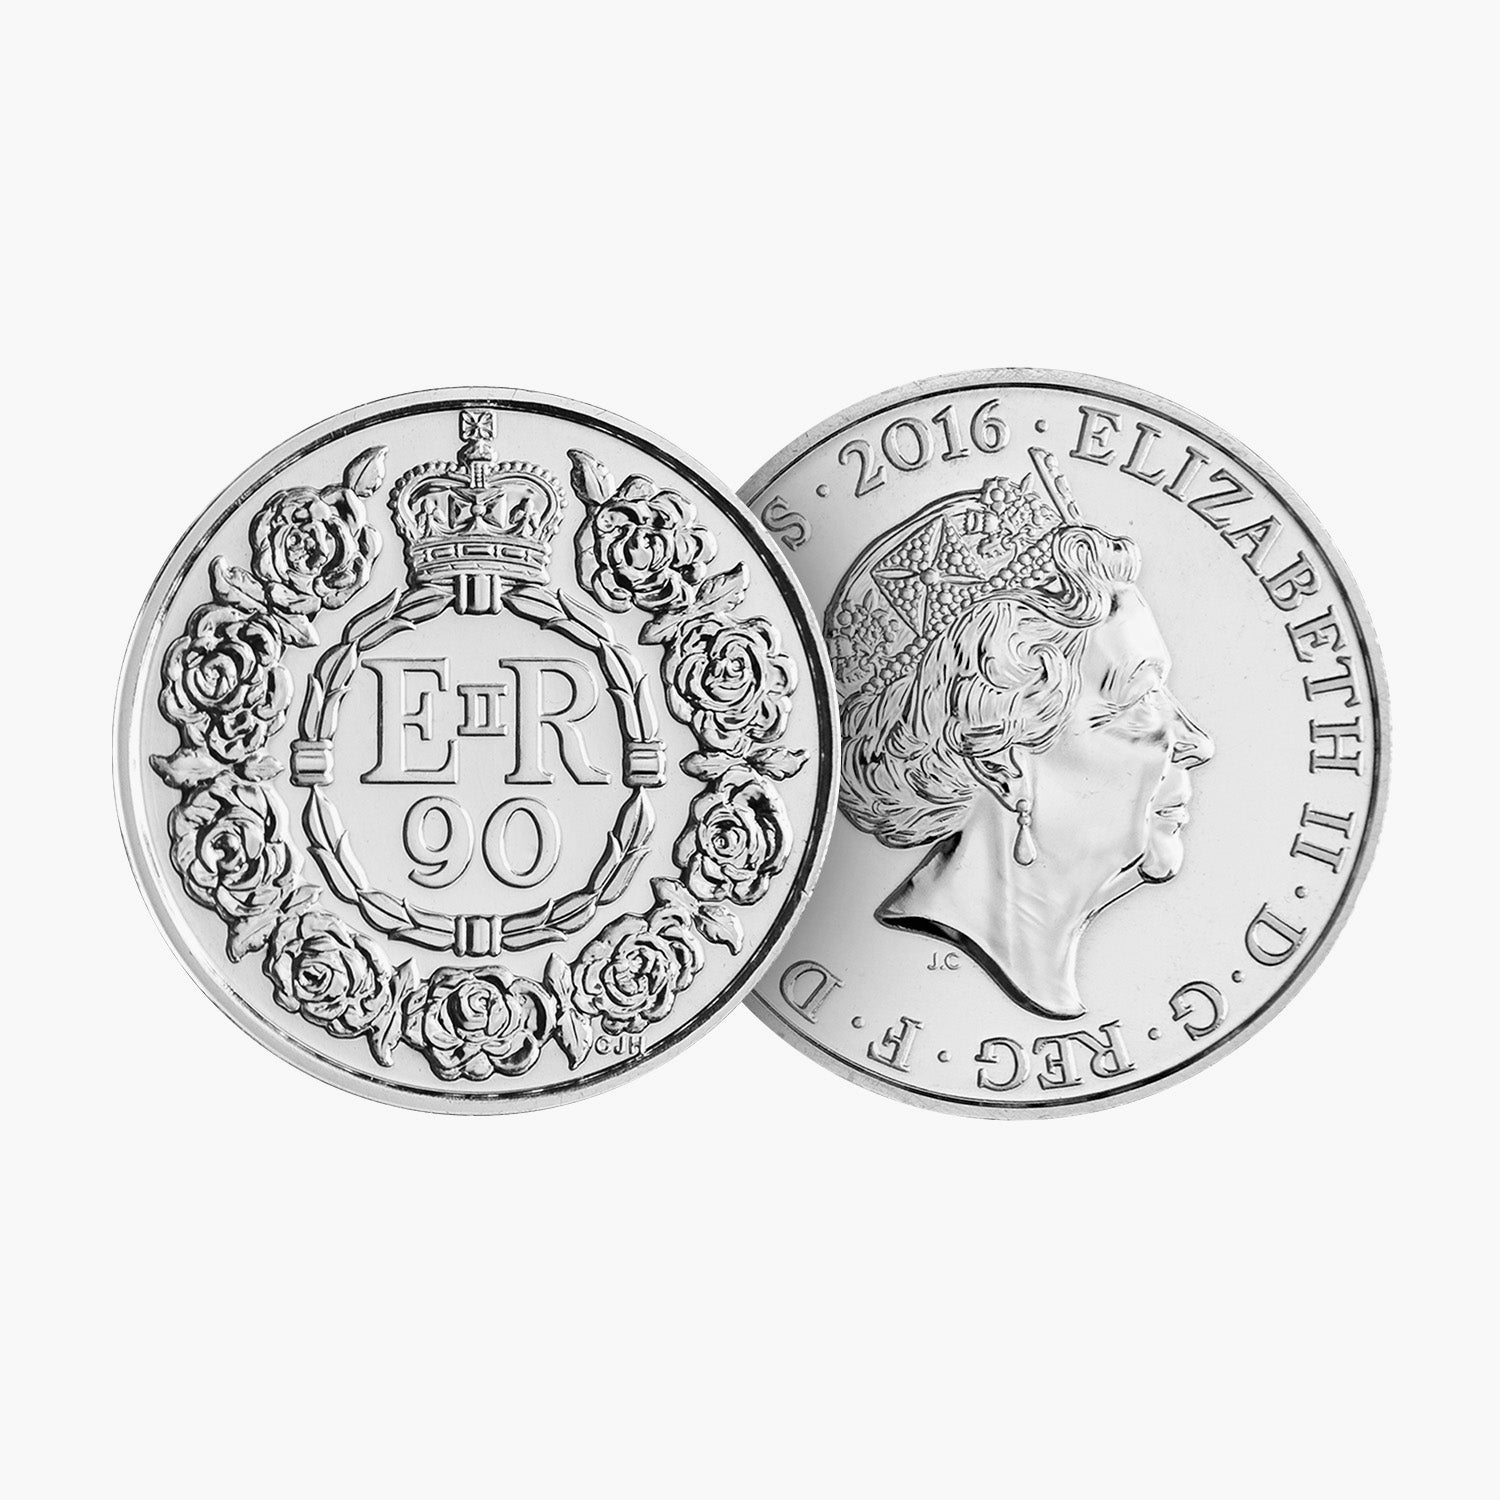 Le 90e anniversaire de la reine Elizabeth II 2016 Pièce de 20 £ en argent fin